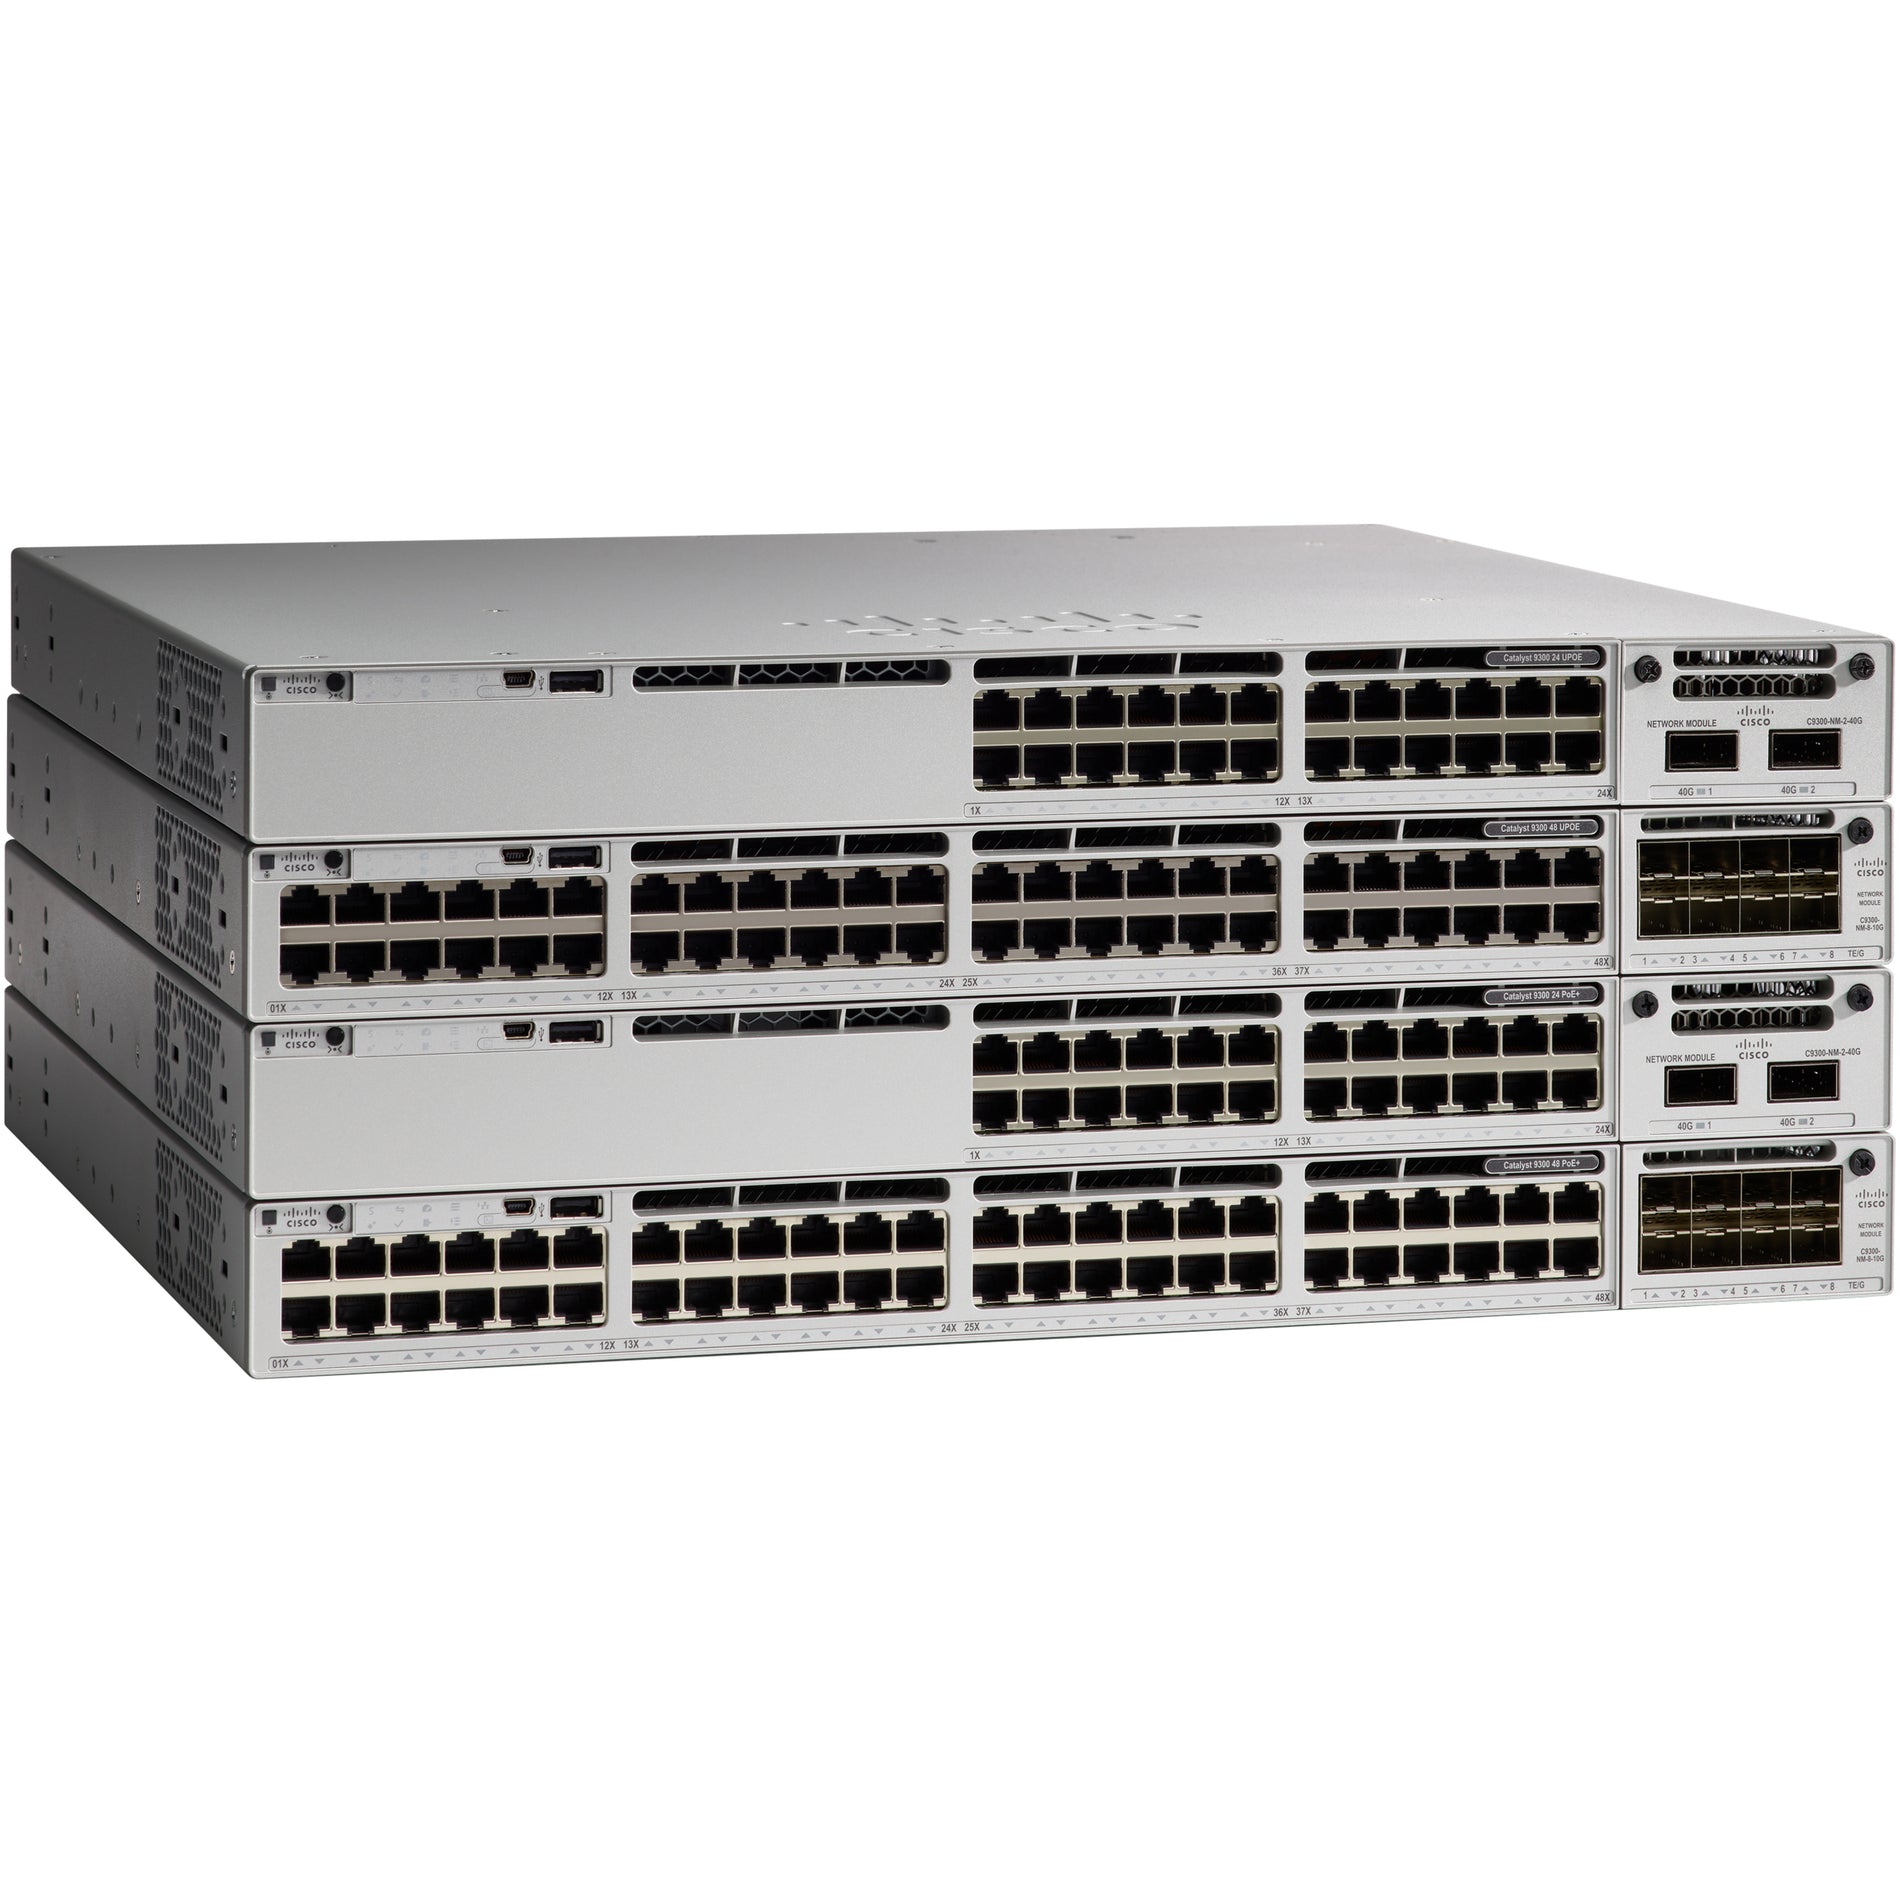 シスコ C9300-48UXM-A カタリスト イーサネット スイッチ、48 x ギガビット イーサネット ネットワーク、電源供給、管理可能